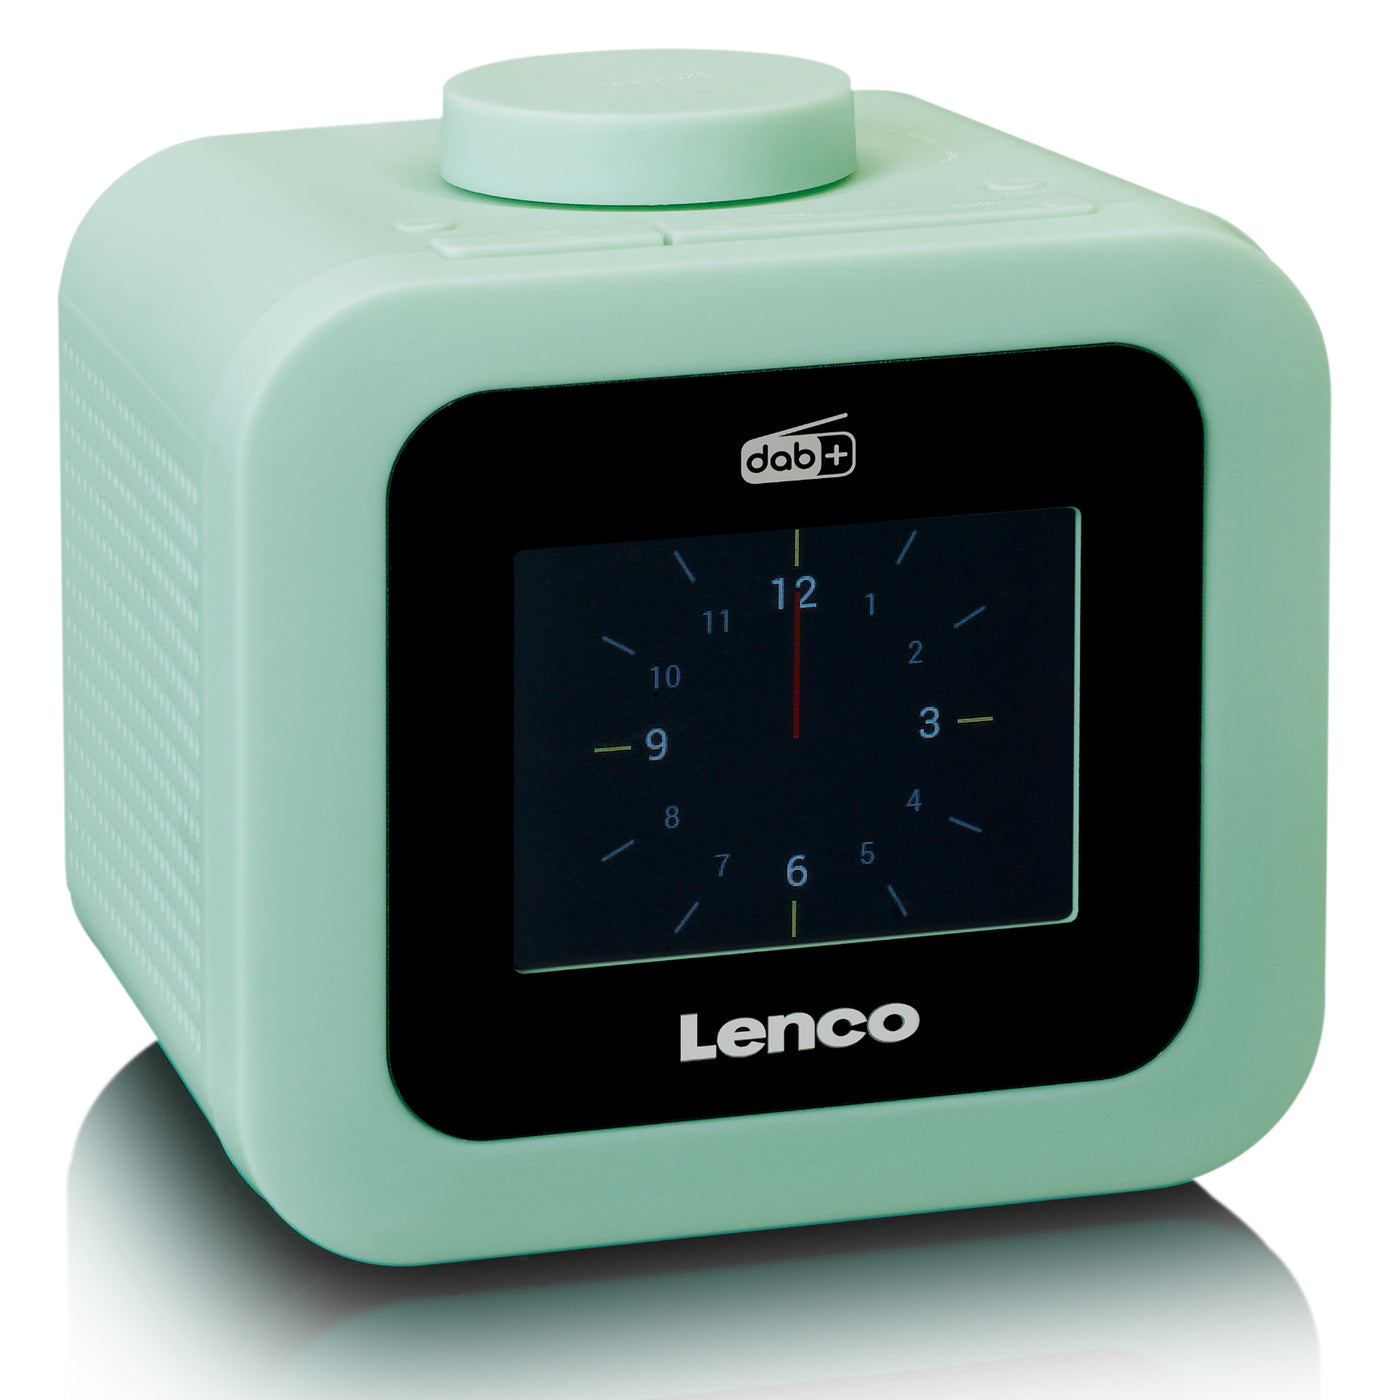 Lenco CR-620GN - Radio-réveil DAB+/FM avec écran couleur - Vert